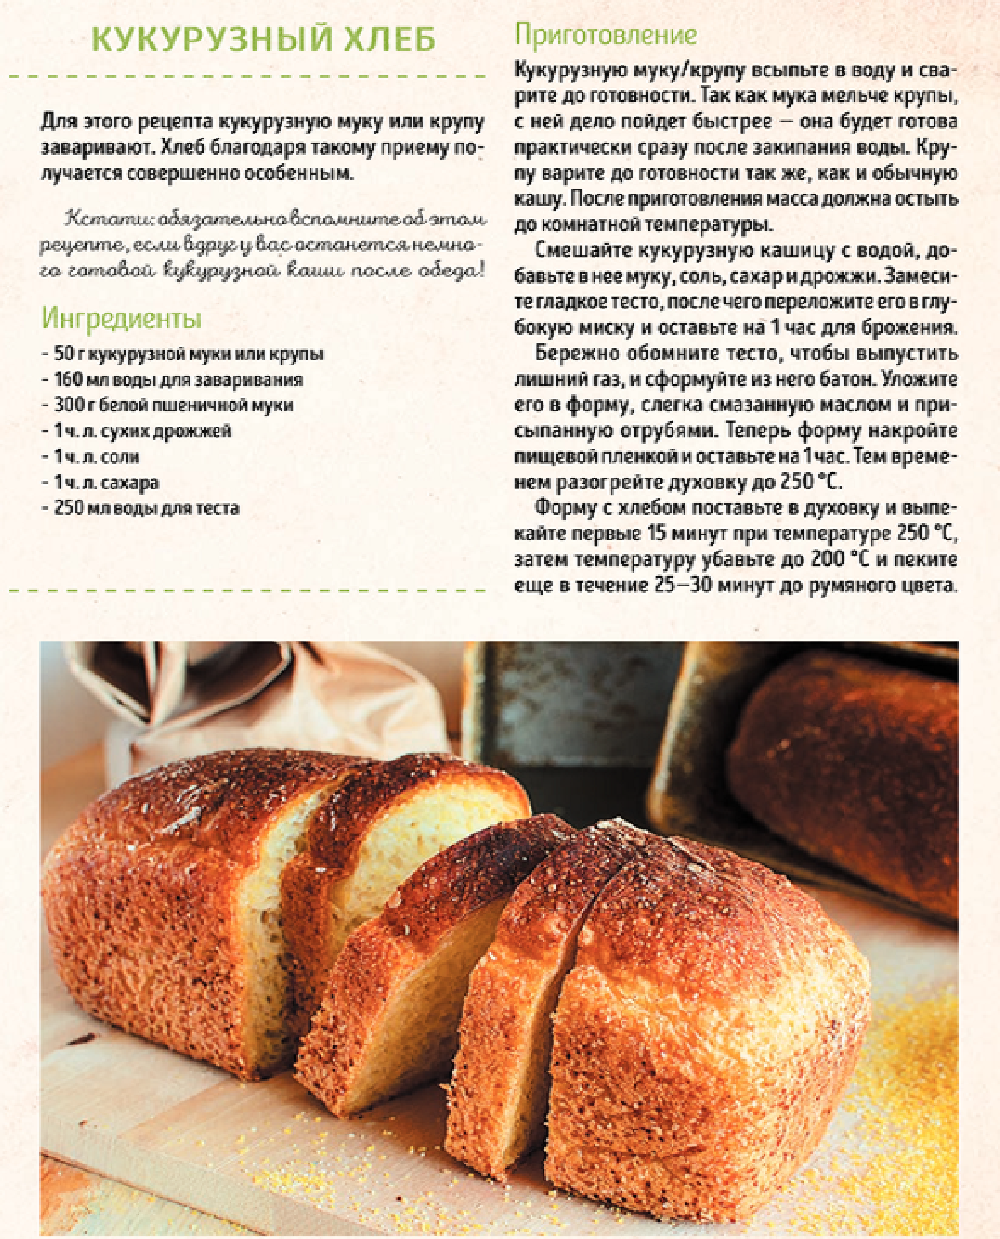 Рецепт хлеба. Рецепт хлебобулочных изделий. Рецептура хлеба и хлебобулочных изделий. Рецептура приготовления хлеба. Рецепты пошагово хлеба в хлебопечке